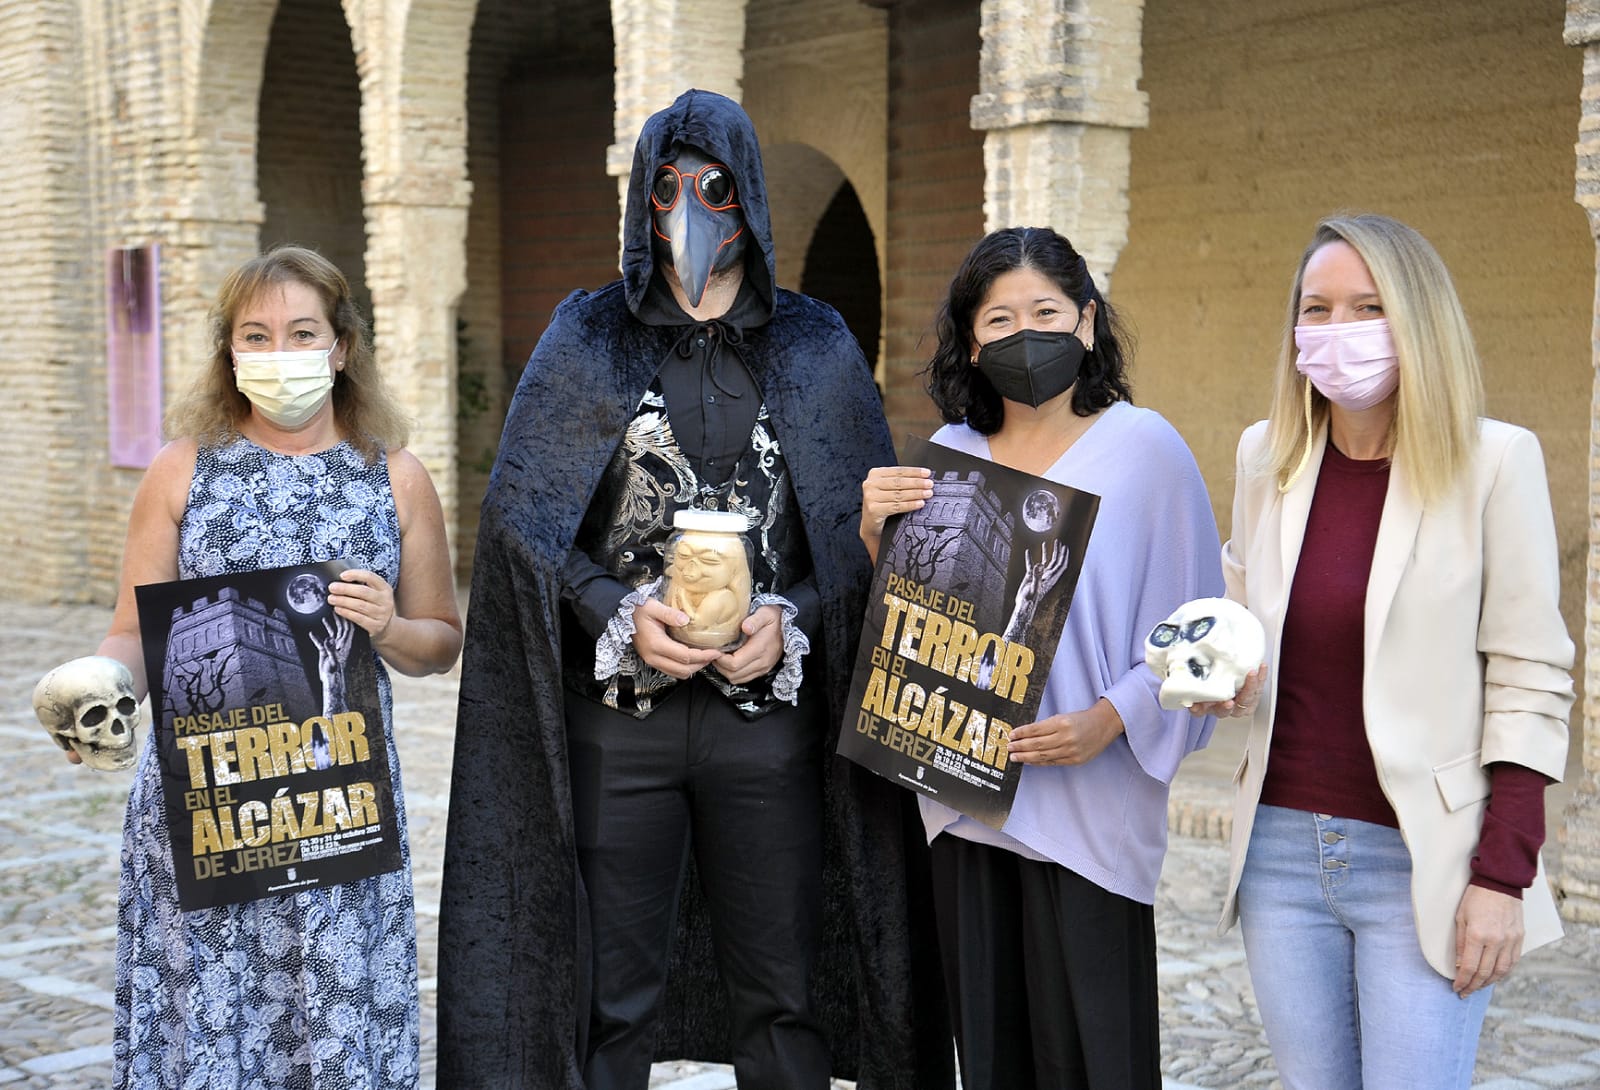 Presentación del Pasaje del terror en el Alcázar de Jerez.